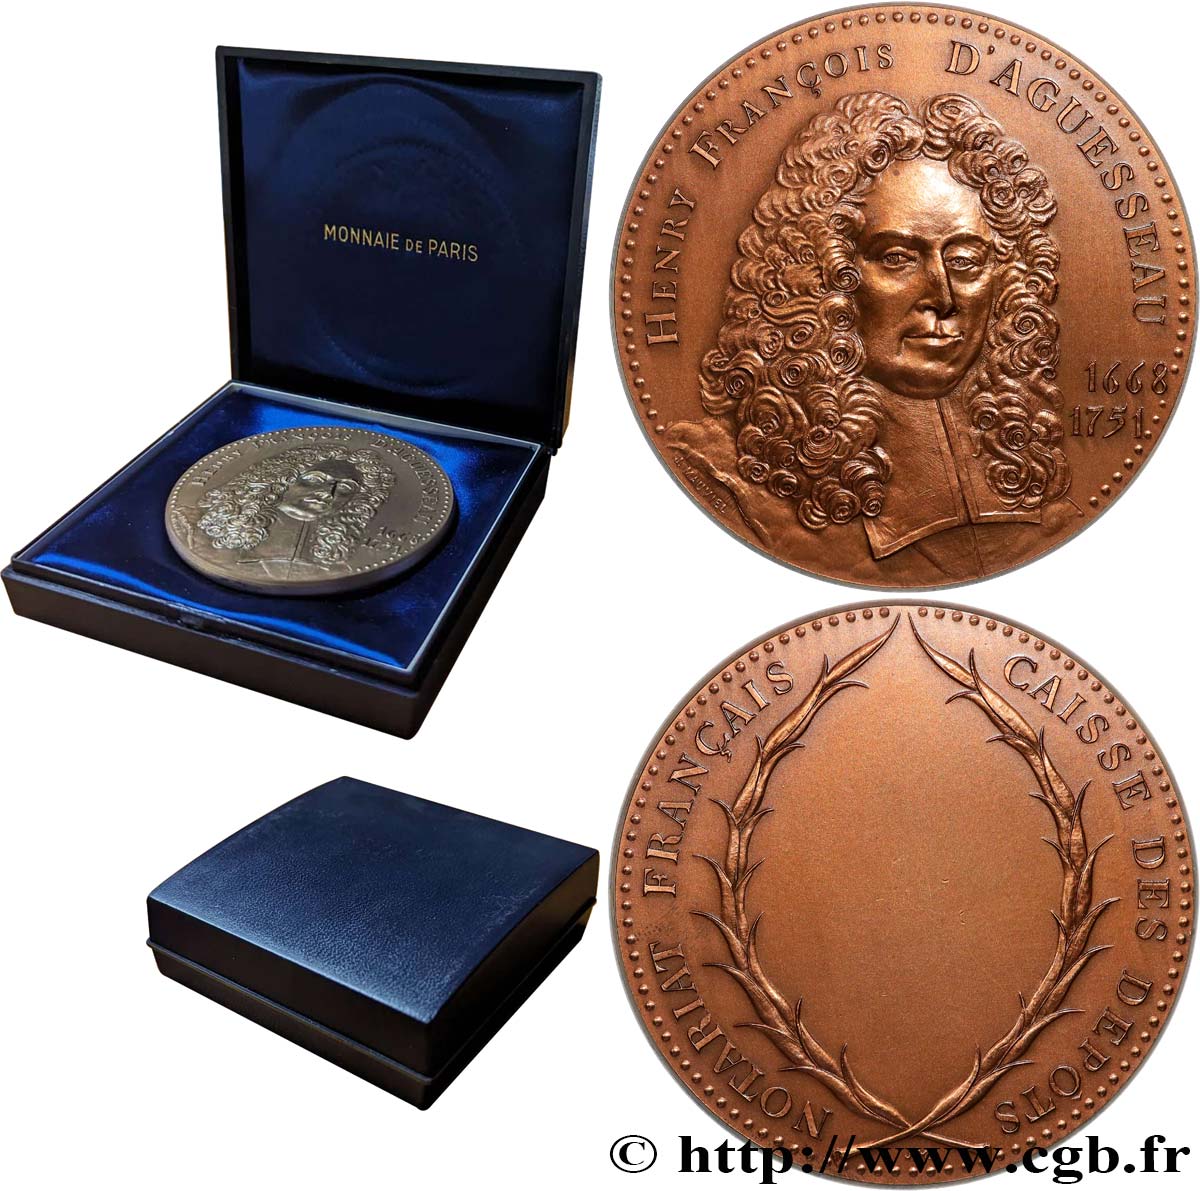 NOTAIRES DU XIXe SIECLE Médaille, Aguesseau, Caisse des dépôts EBC